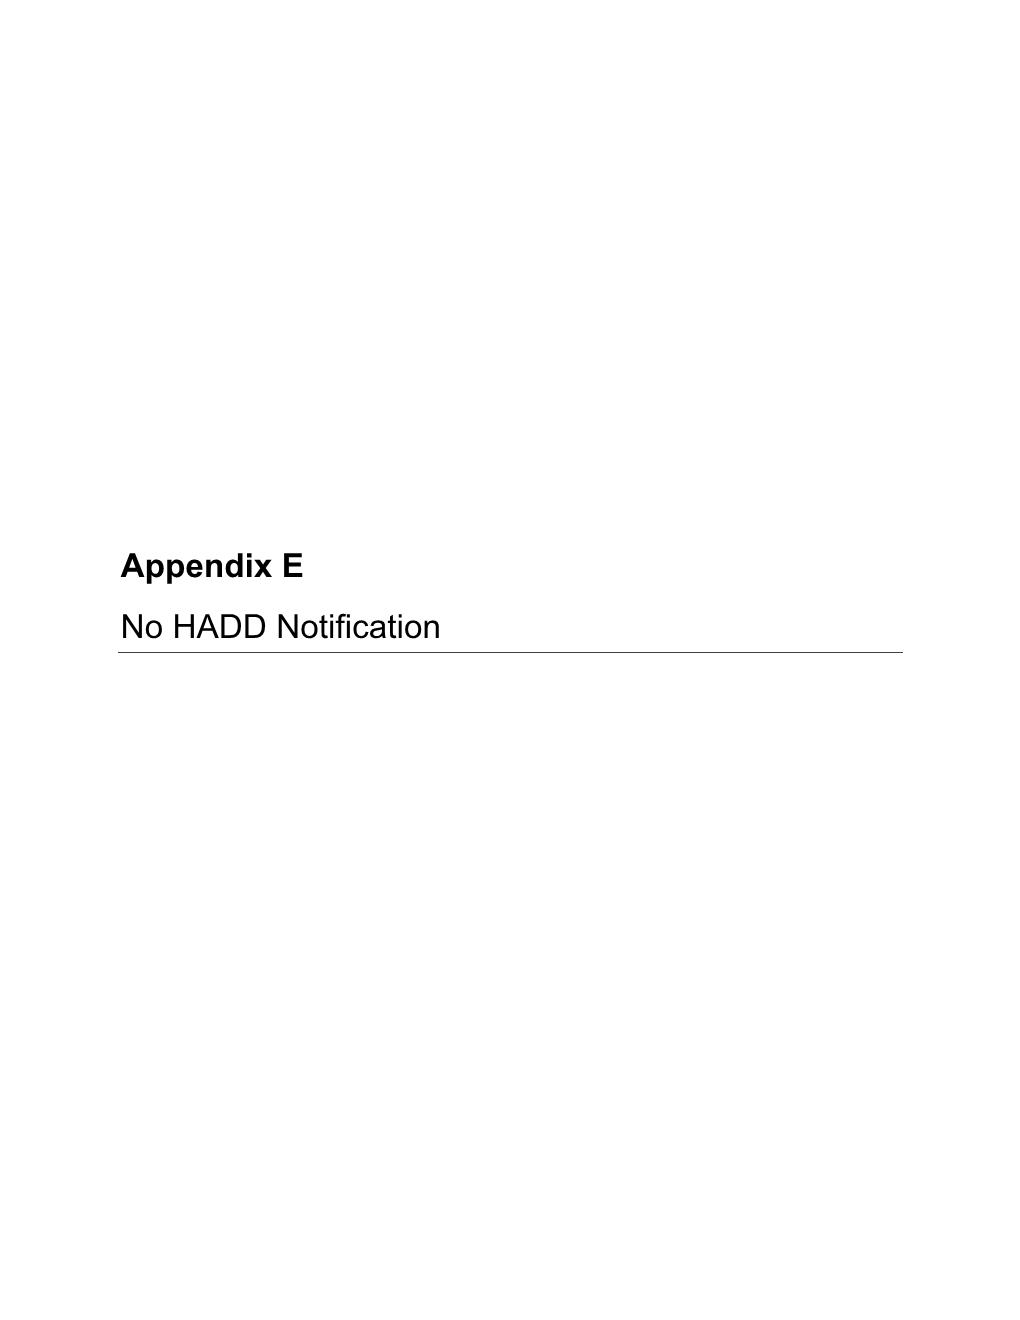 Appendix E No HADD Notification